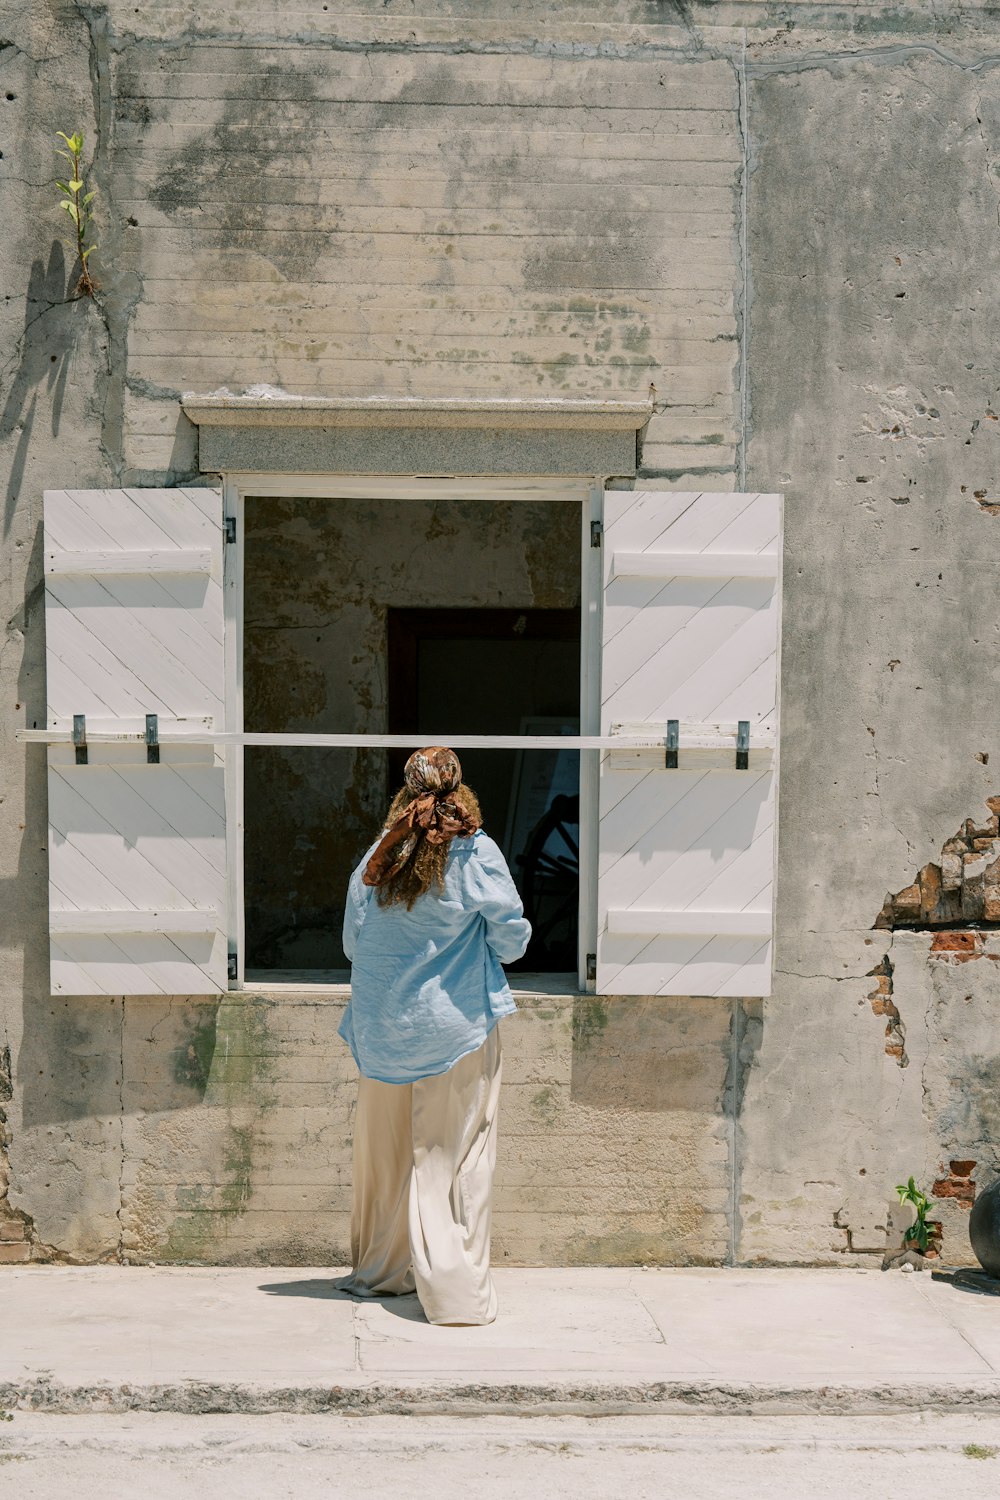 una mujer parada frente a una ventana con las persianas abiertas